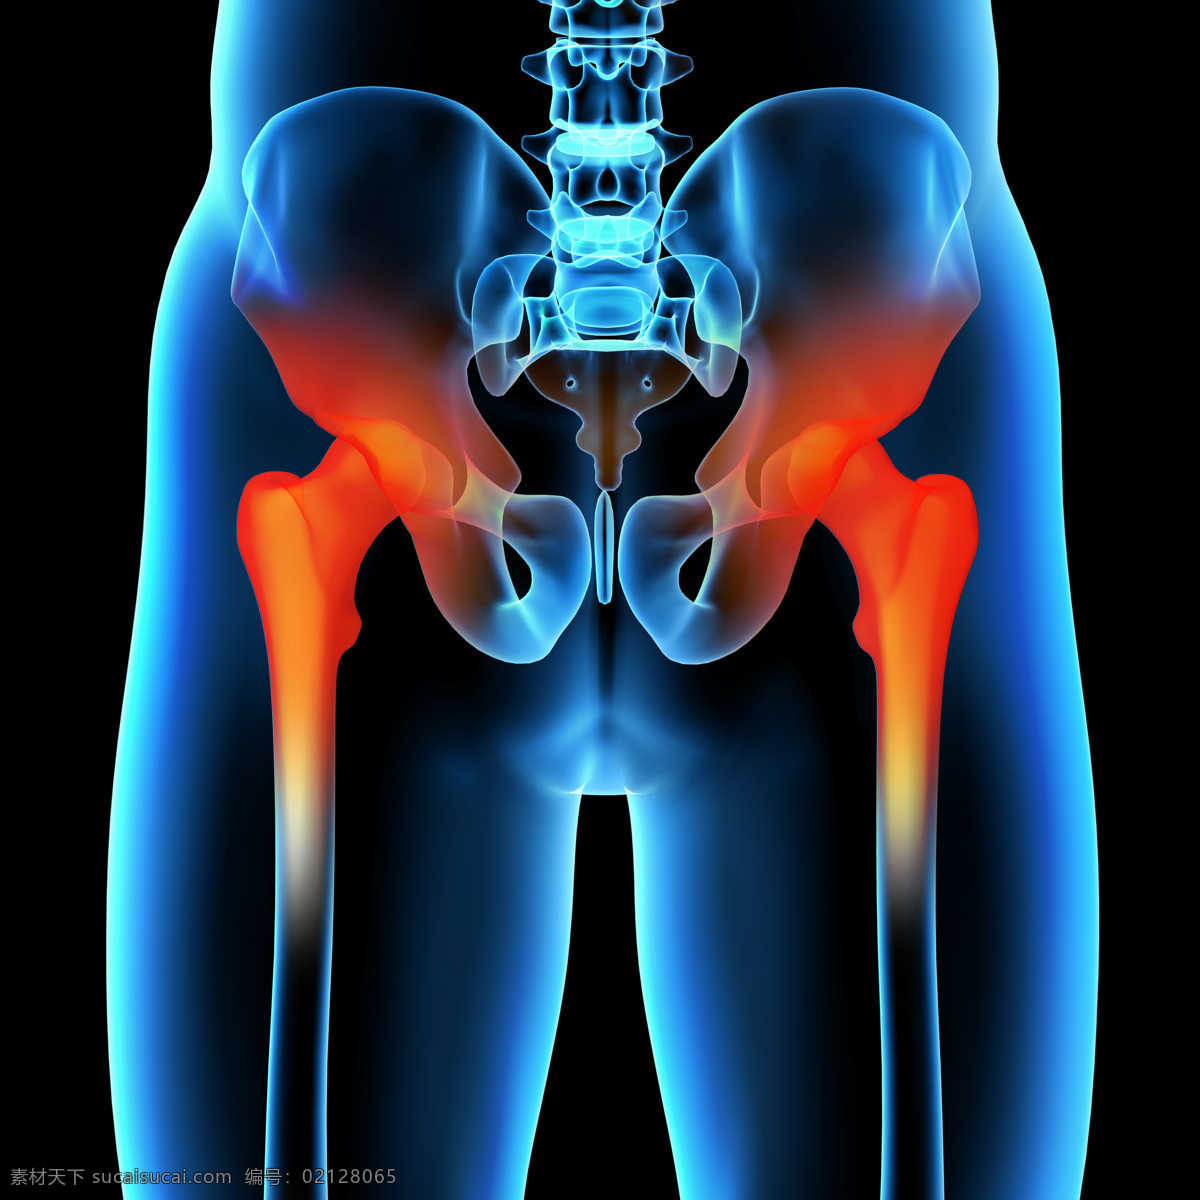 腿 关节痛 人体骨头 腿关节 关节炎 人体器官 医疗护理 现代科技